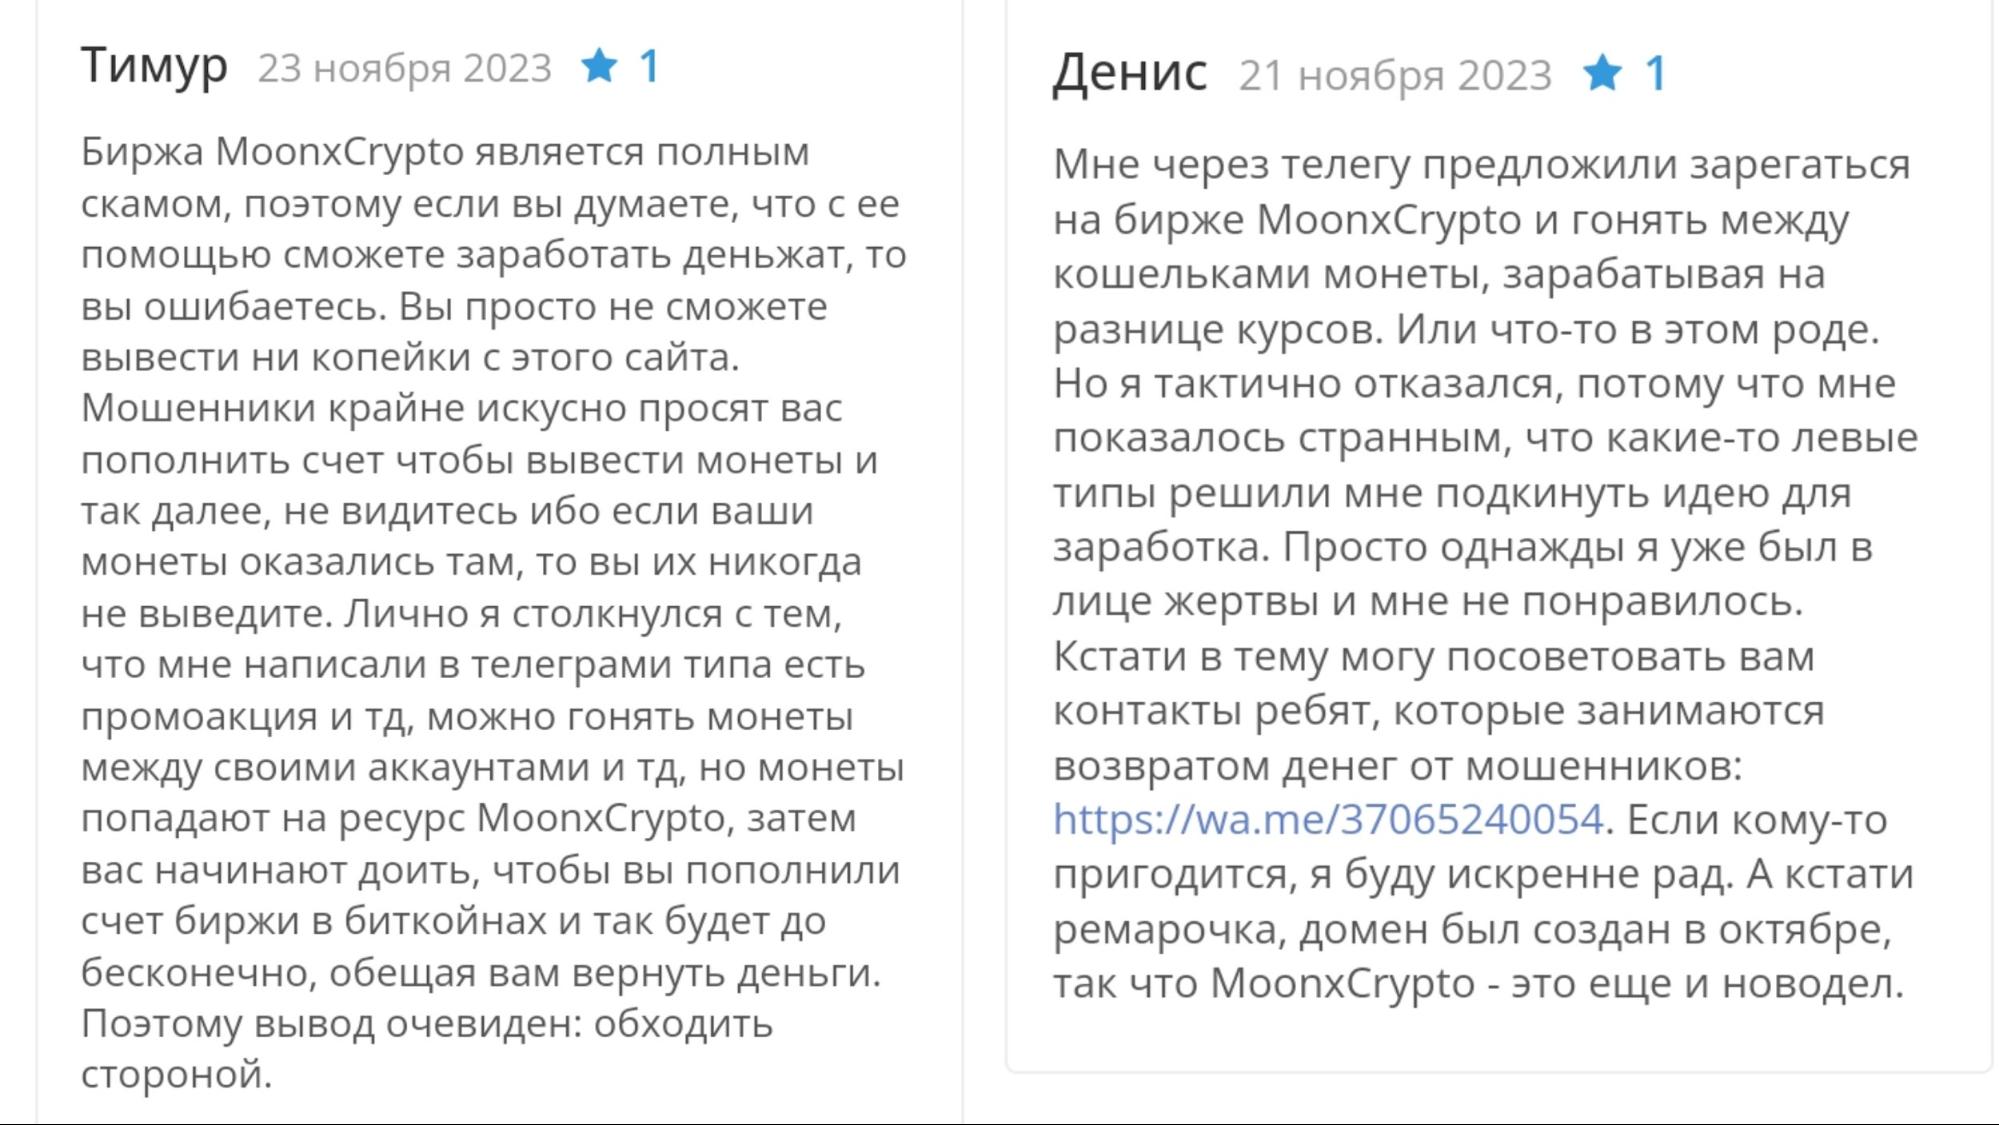 Moonxcrypto com — отзывы о криптовалютной бирже